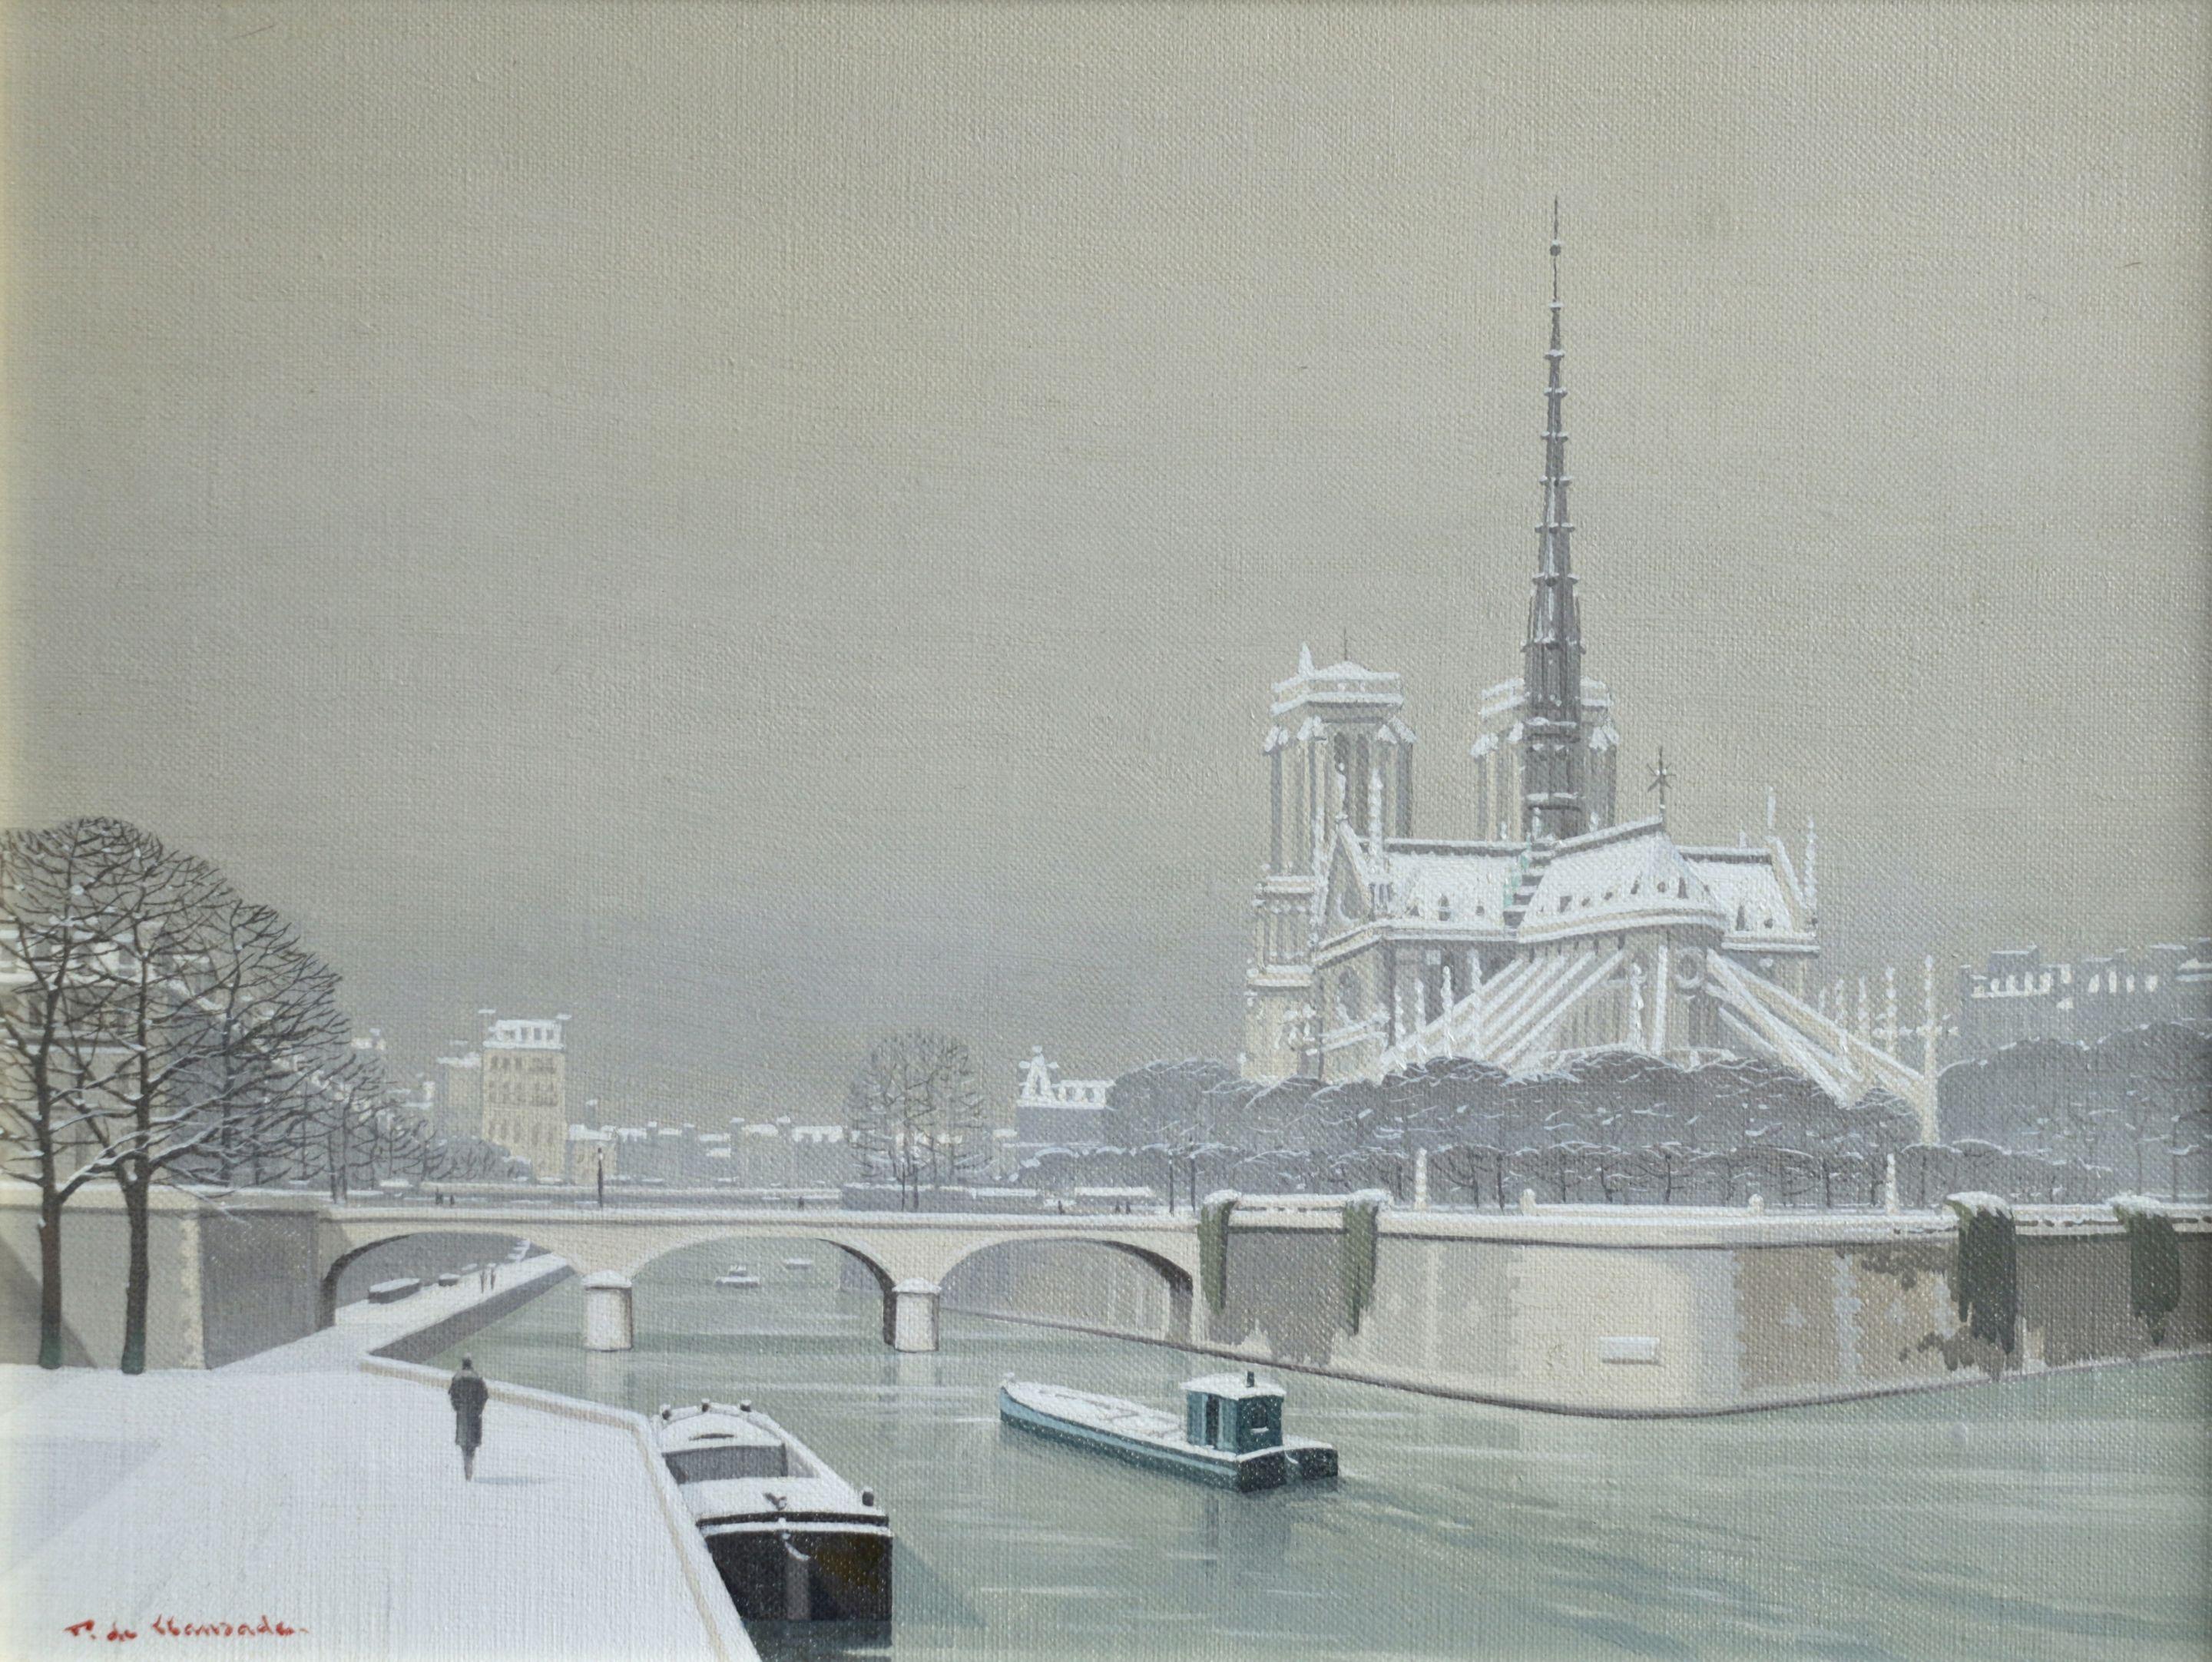 Notre Dame sous la Neige - Boats on River Winter Snow Lanscape by de Clausade - Painting by Pierre de Clausade